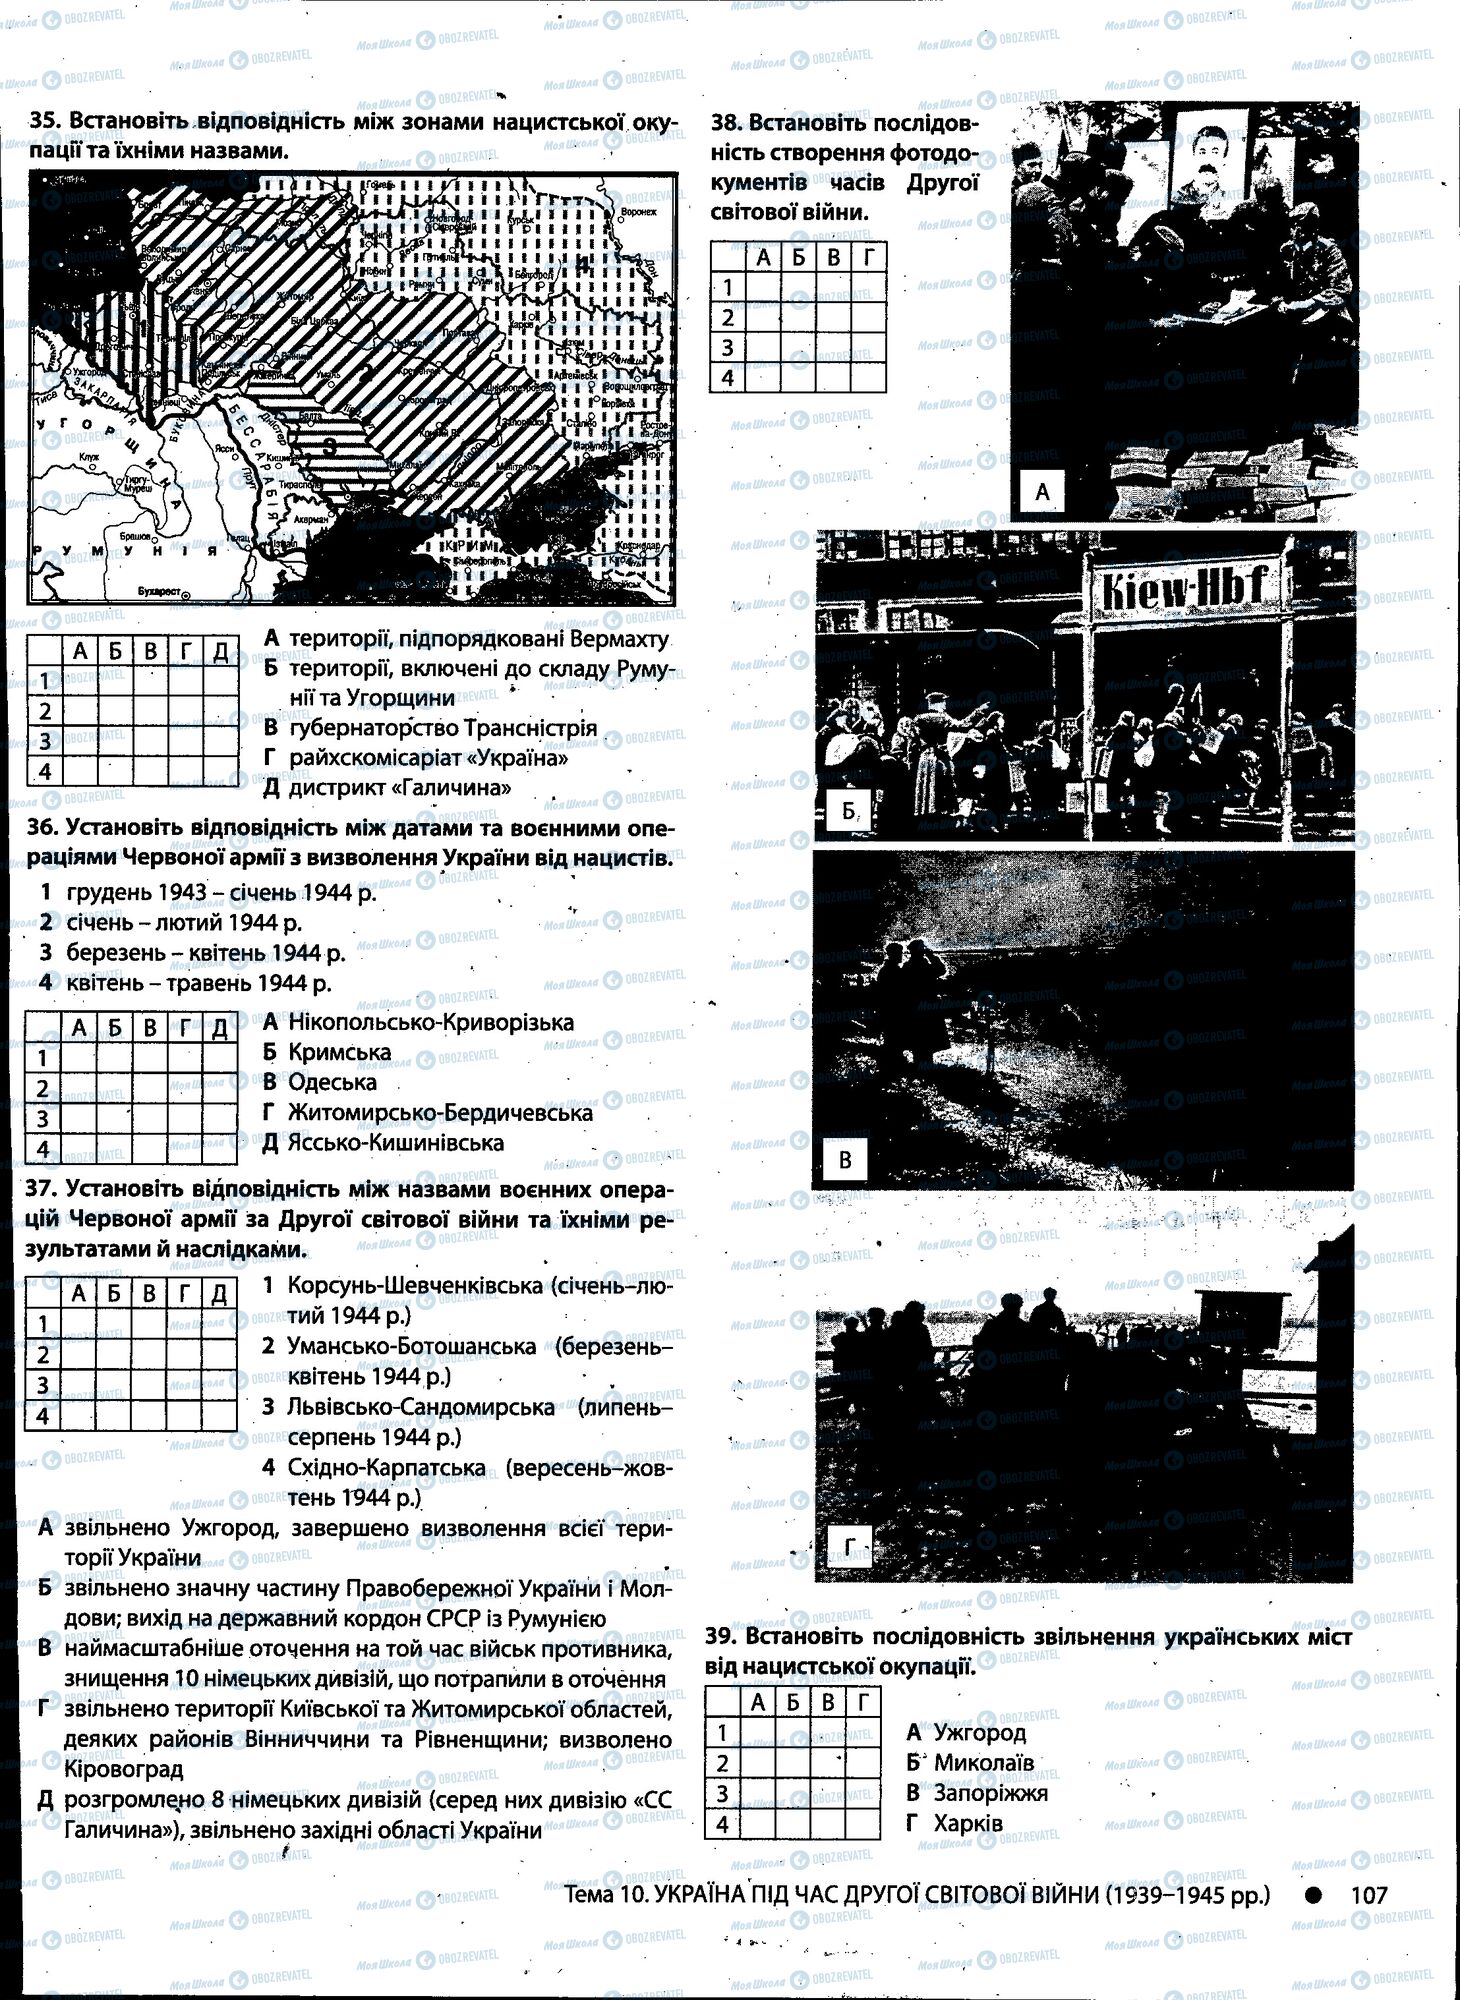 ДПА История Украины 11 класс страница 107